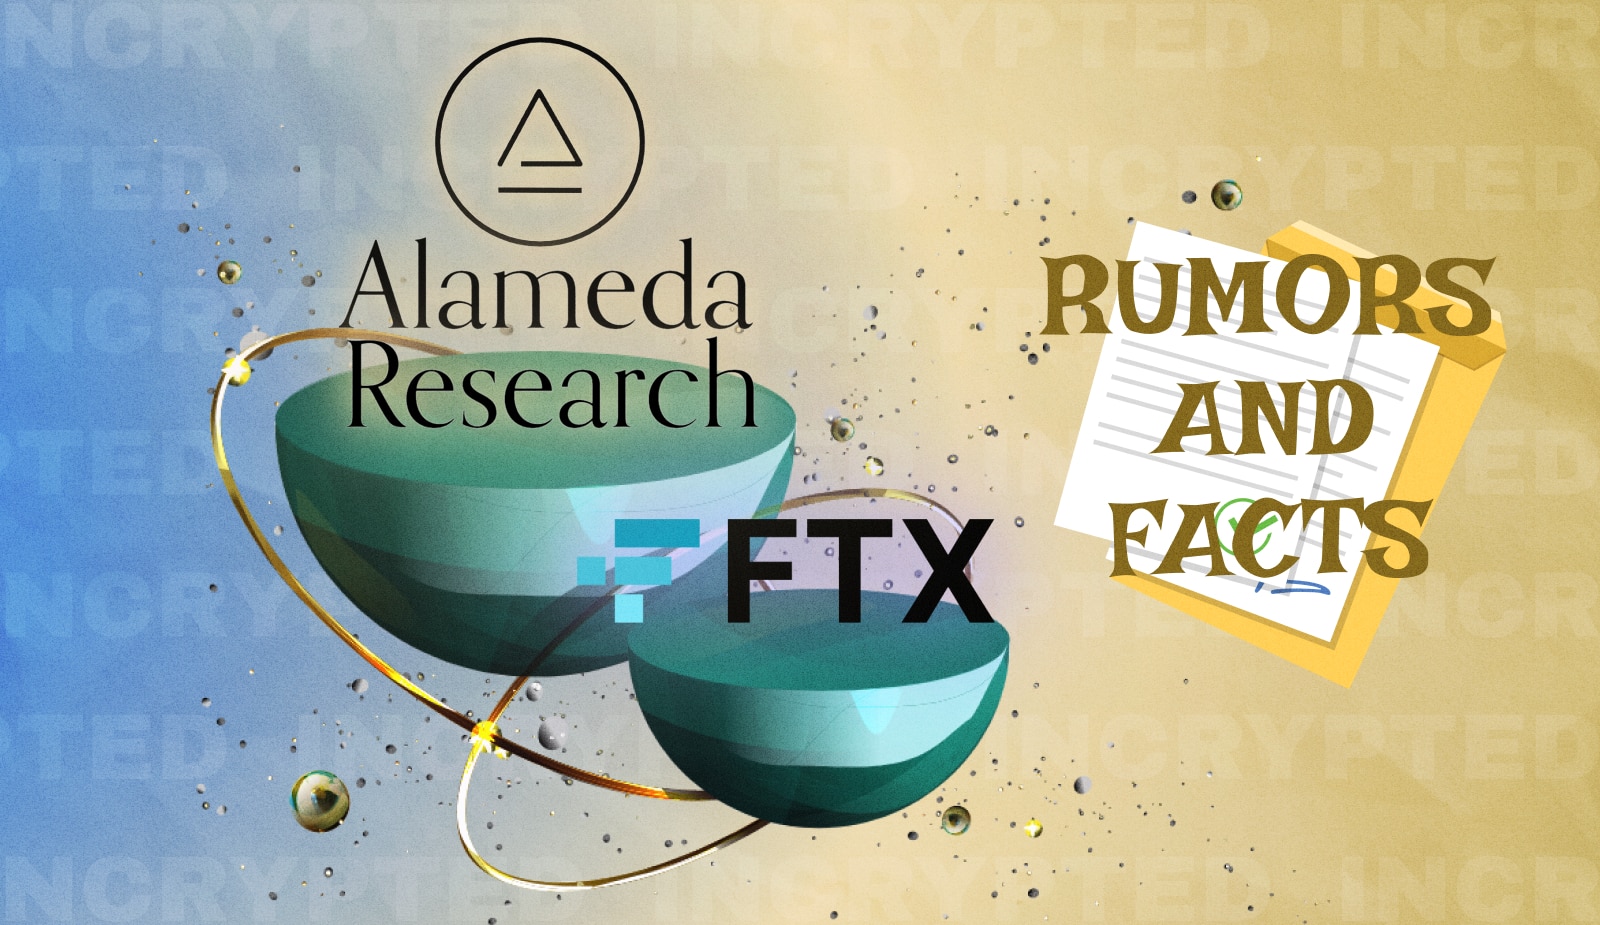 Alameda заявила об объединении венчурных подразделений с FTX. Сэм Бэнкман-Фрид назвал это враньем. Заглавный коллаж новости.